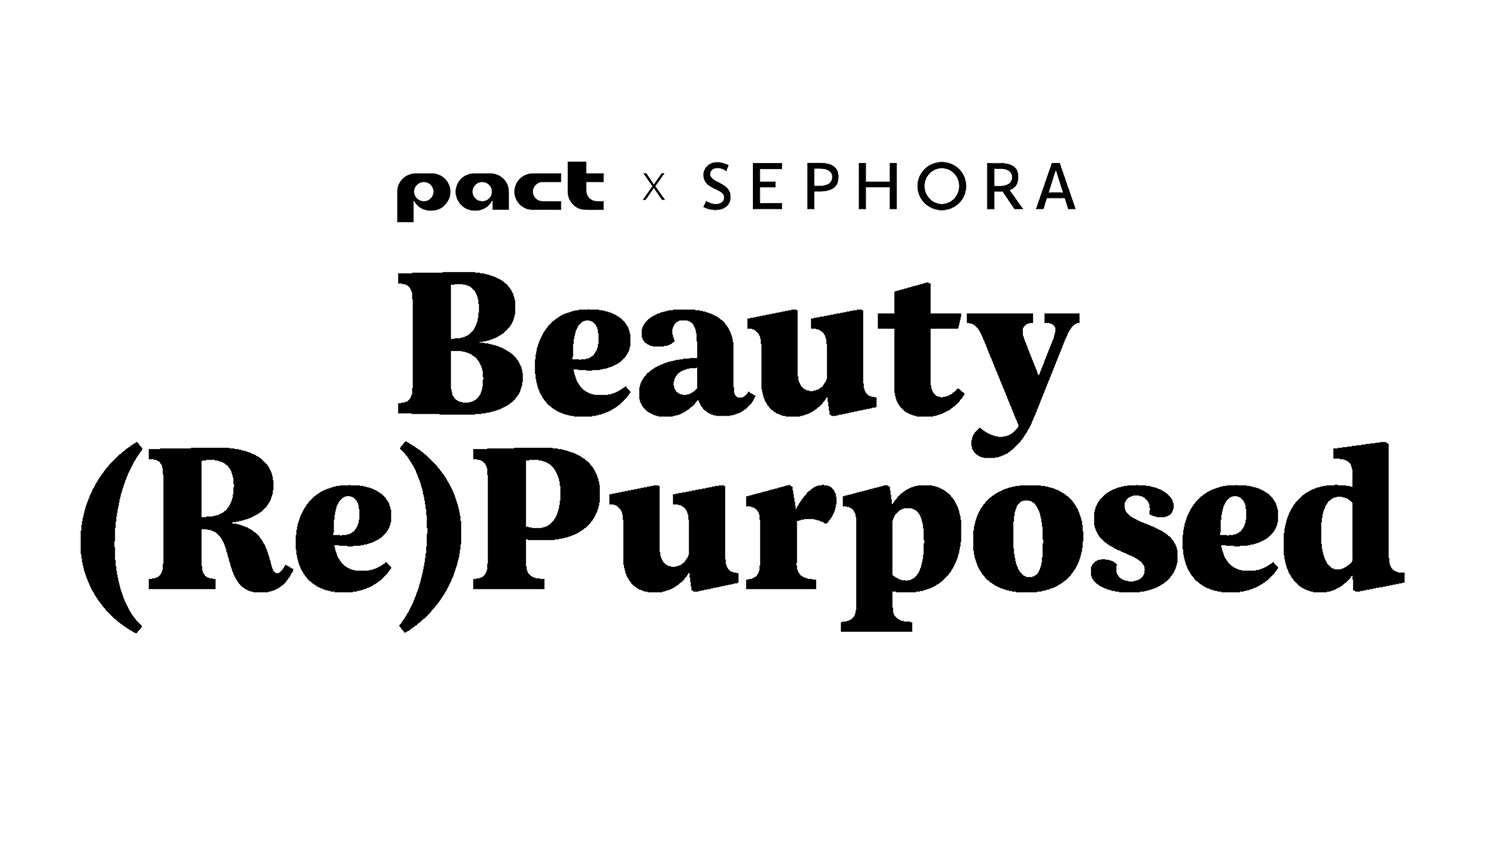 7 LVMH (2020)  Beauty Packaging